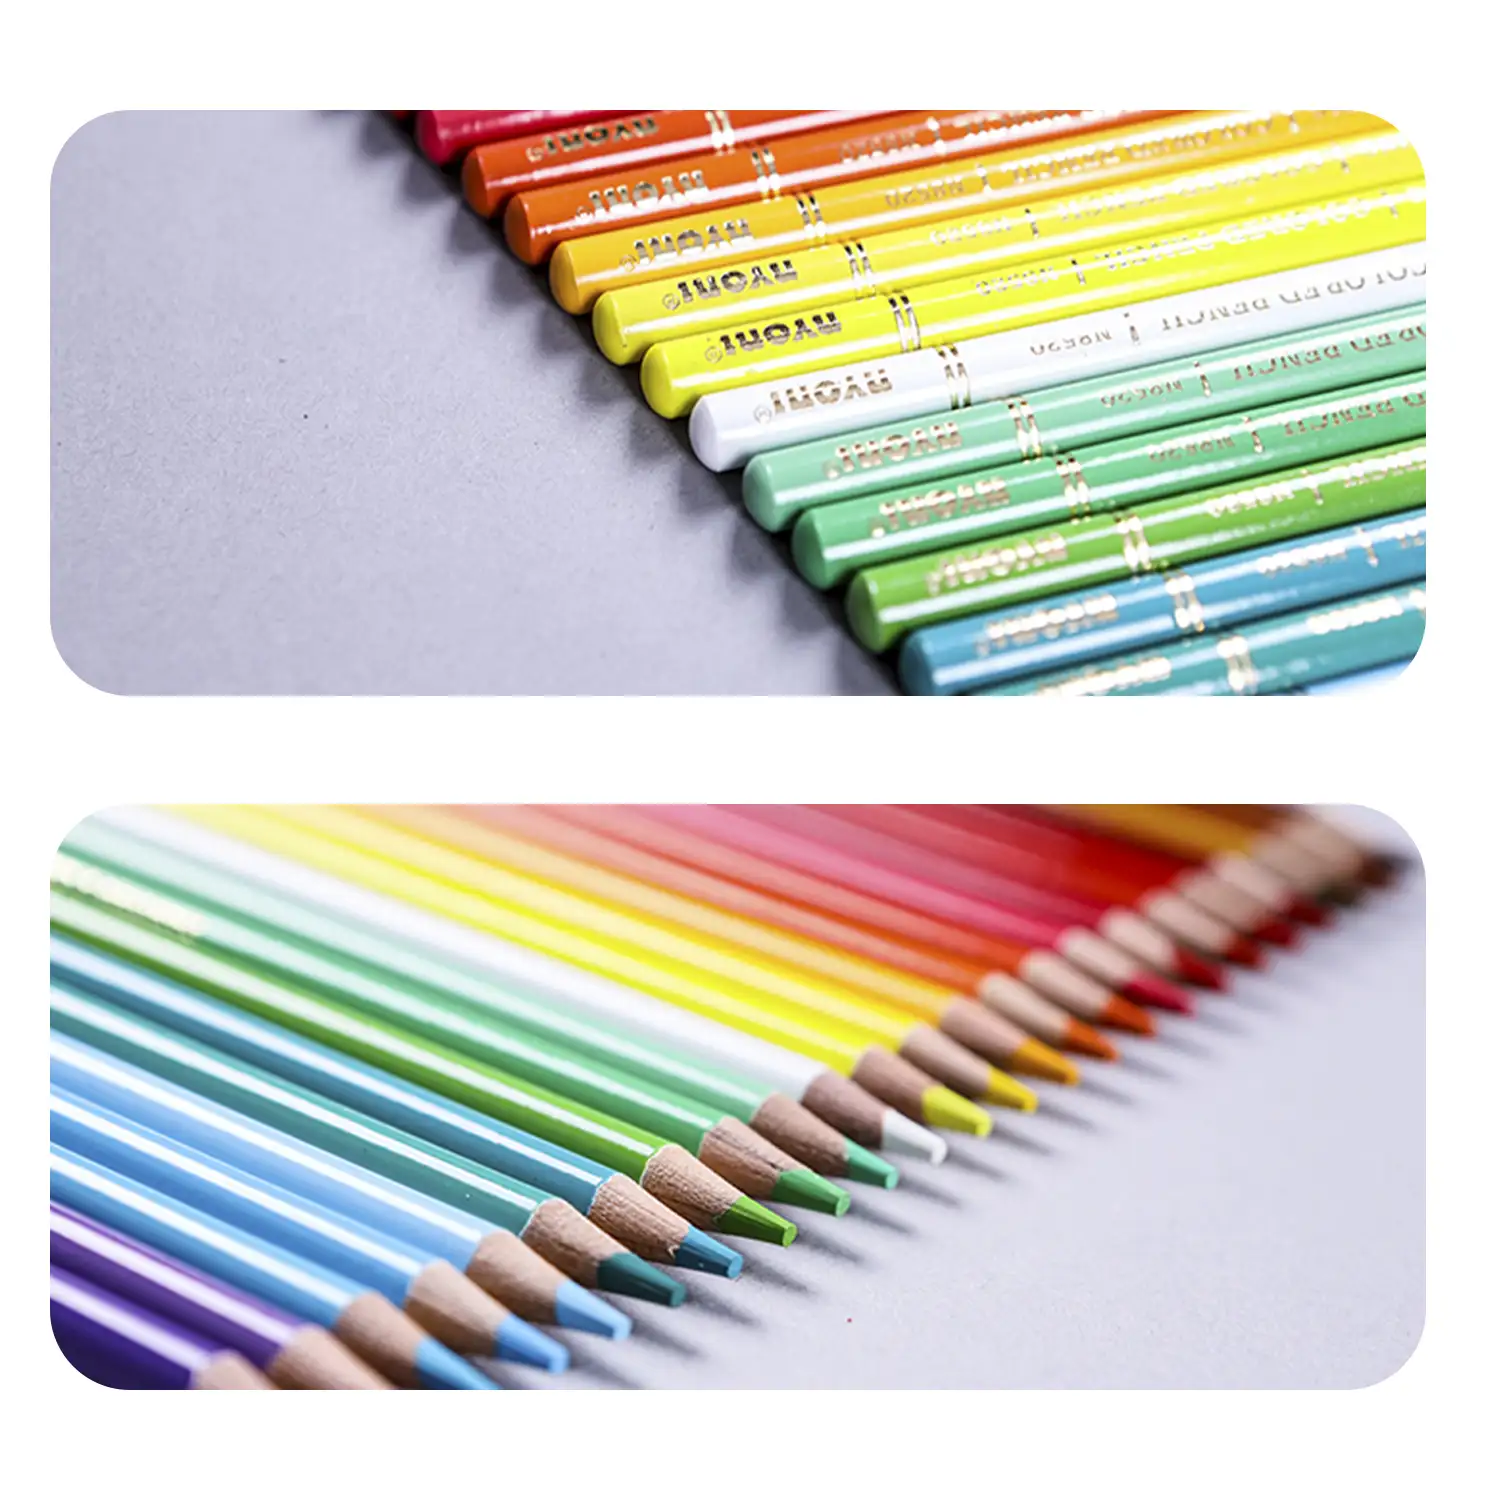 Set de 120 lápices de colores. Fabricados en madera, forma redonda profesional.